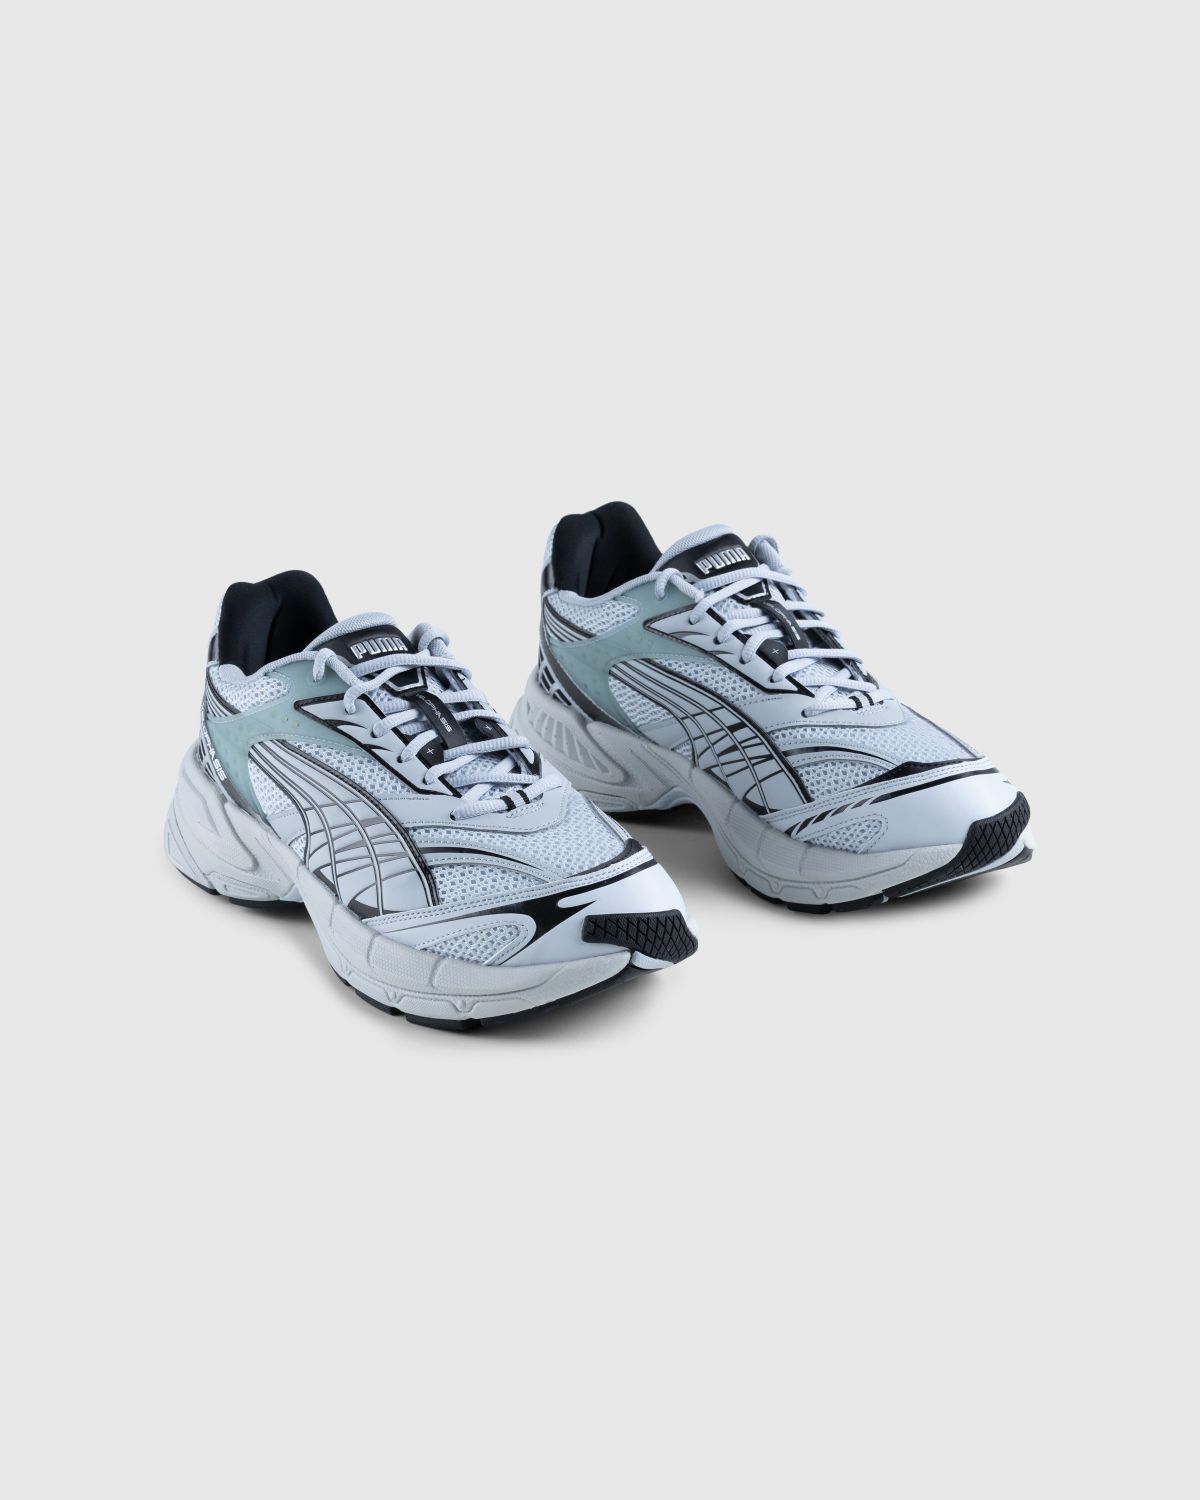 Puma – Velophasis Technisch Grey - Sneakers - Grey - Image 3